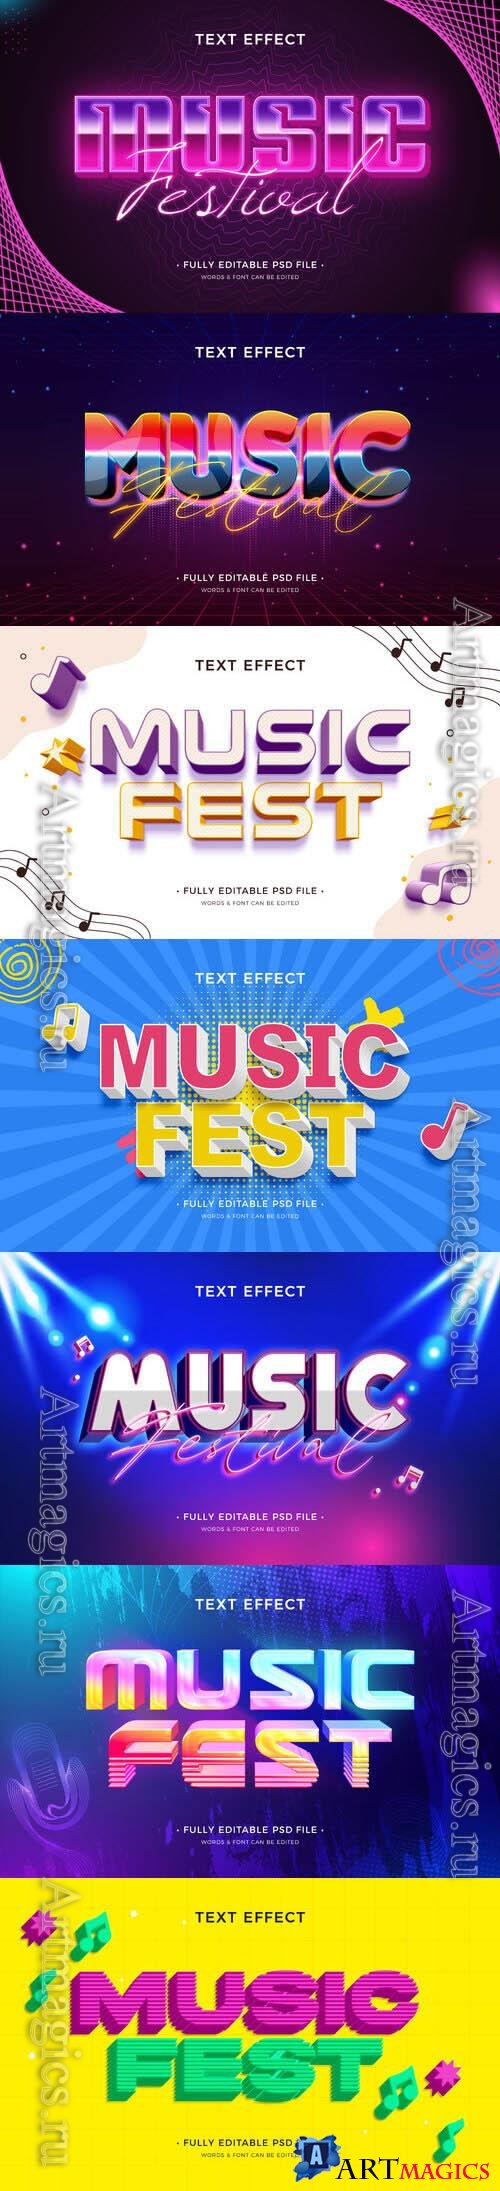 PSD music festival text effect